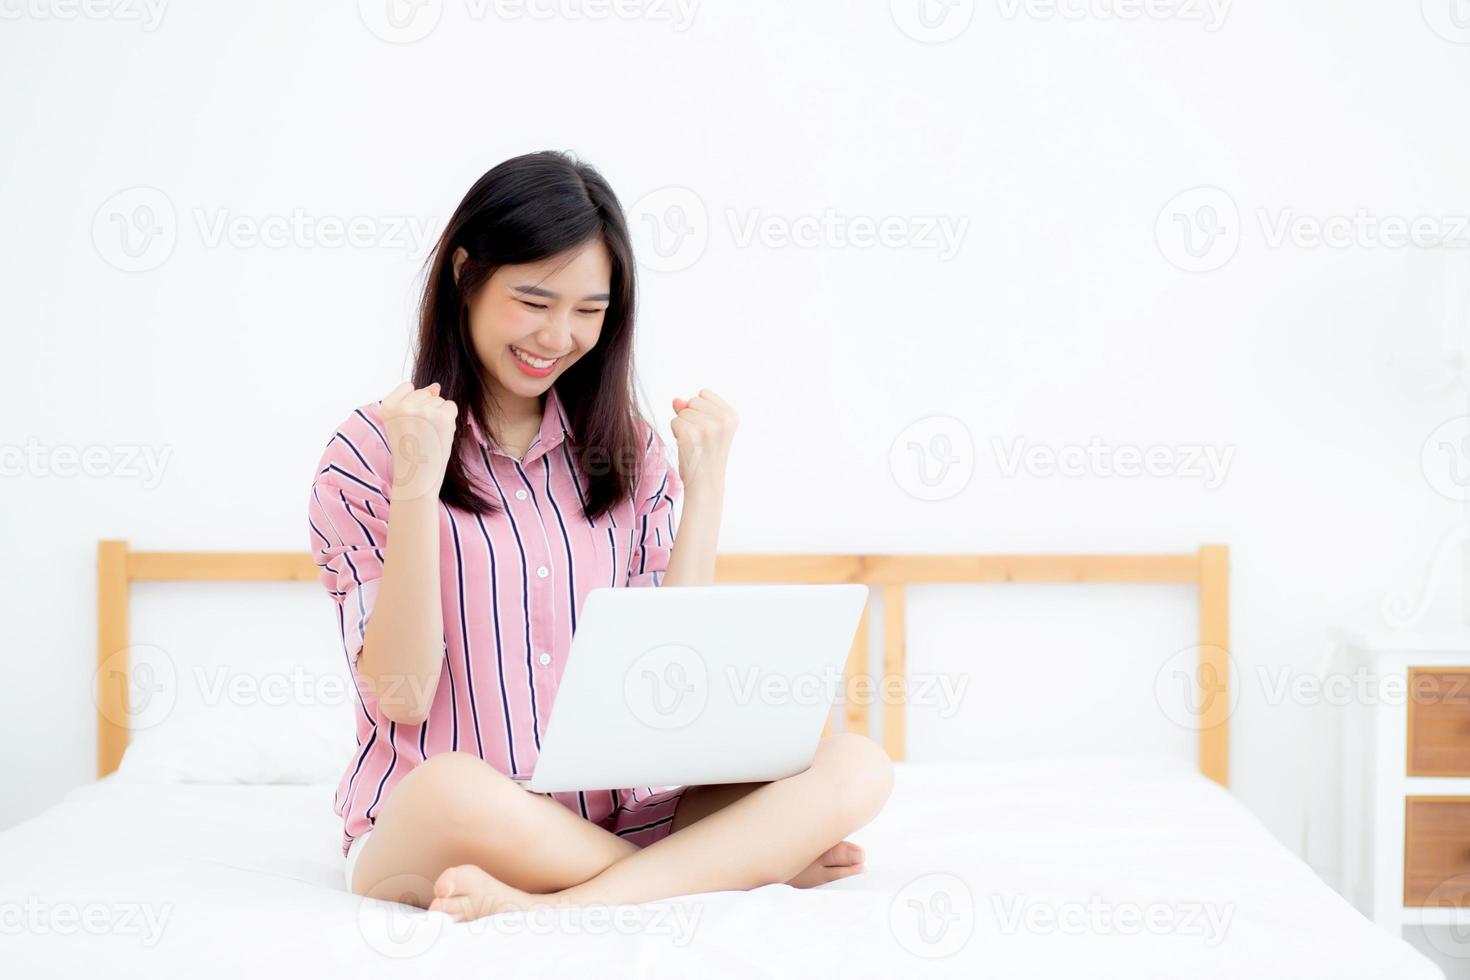 hermoso retrato de una joven asiática sentada relajada y relajada con internet portátil en línea de vacaciones en el dormitorio, alegre de una chica asiática con gesto alegre y exitoso, concepto de estilo de vida. foto